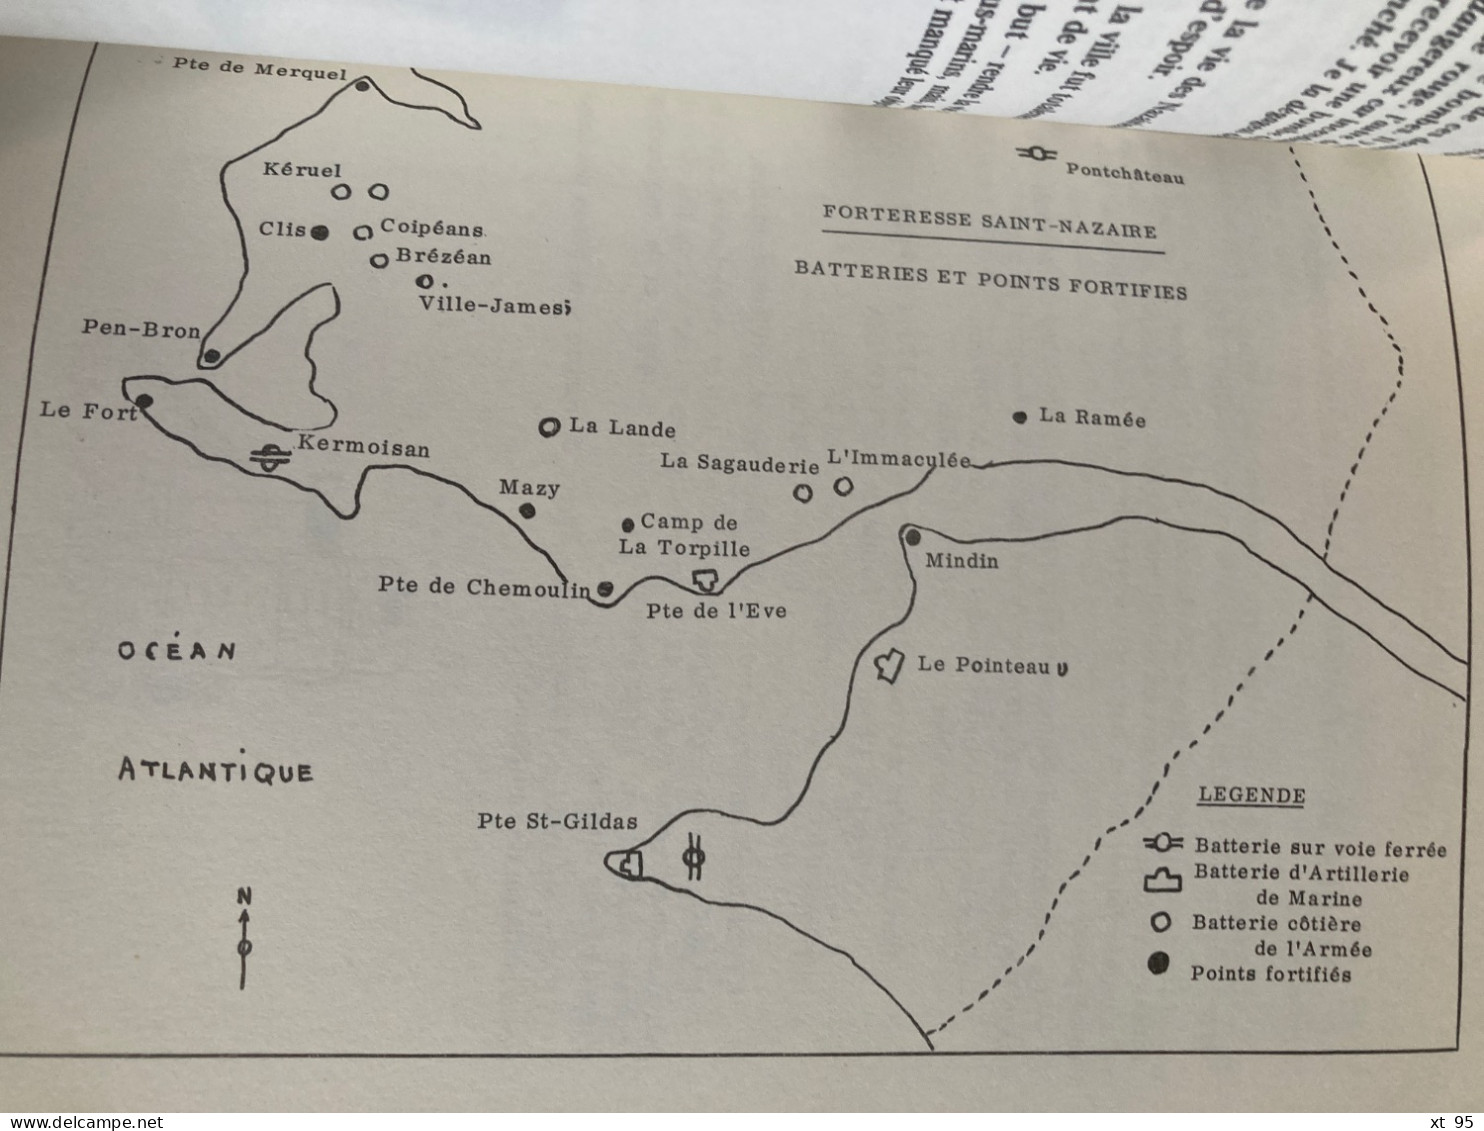 La Forteresse de Saint Nazaire - 1940-1945 - Paul Gamelin - 1980 - 116 pages